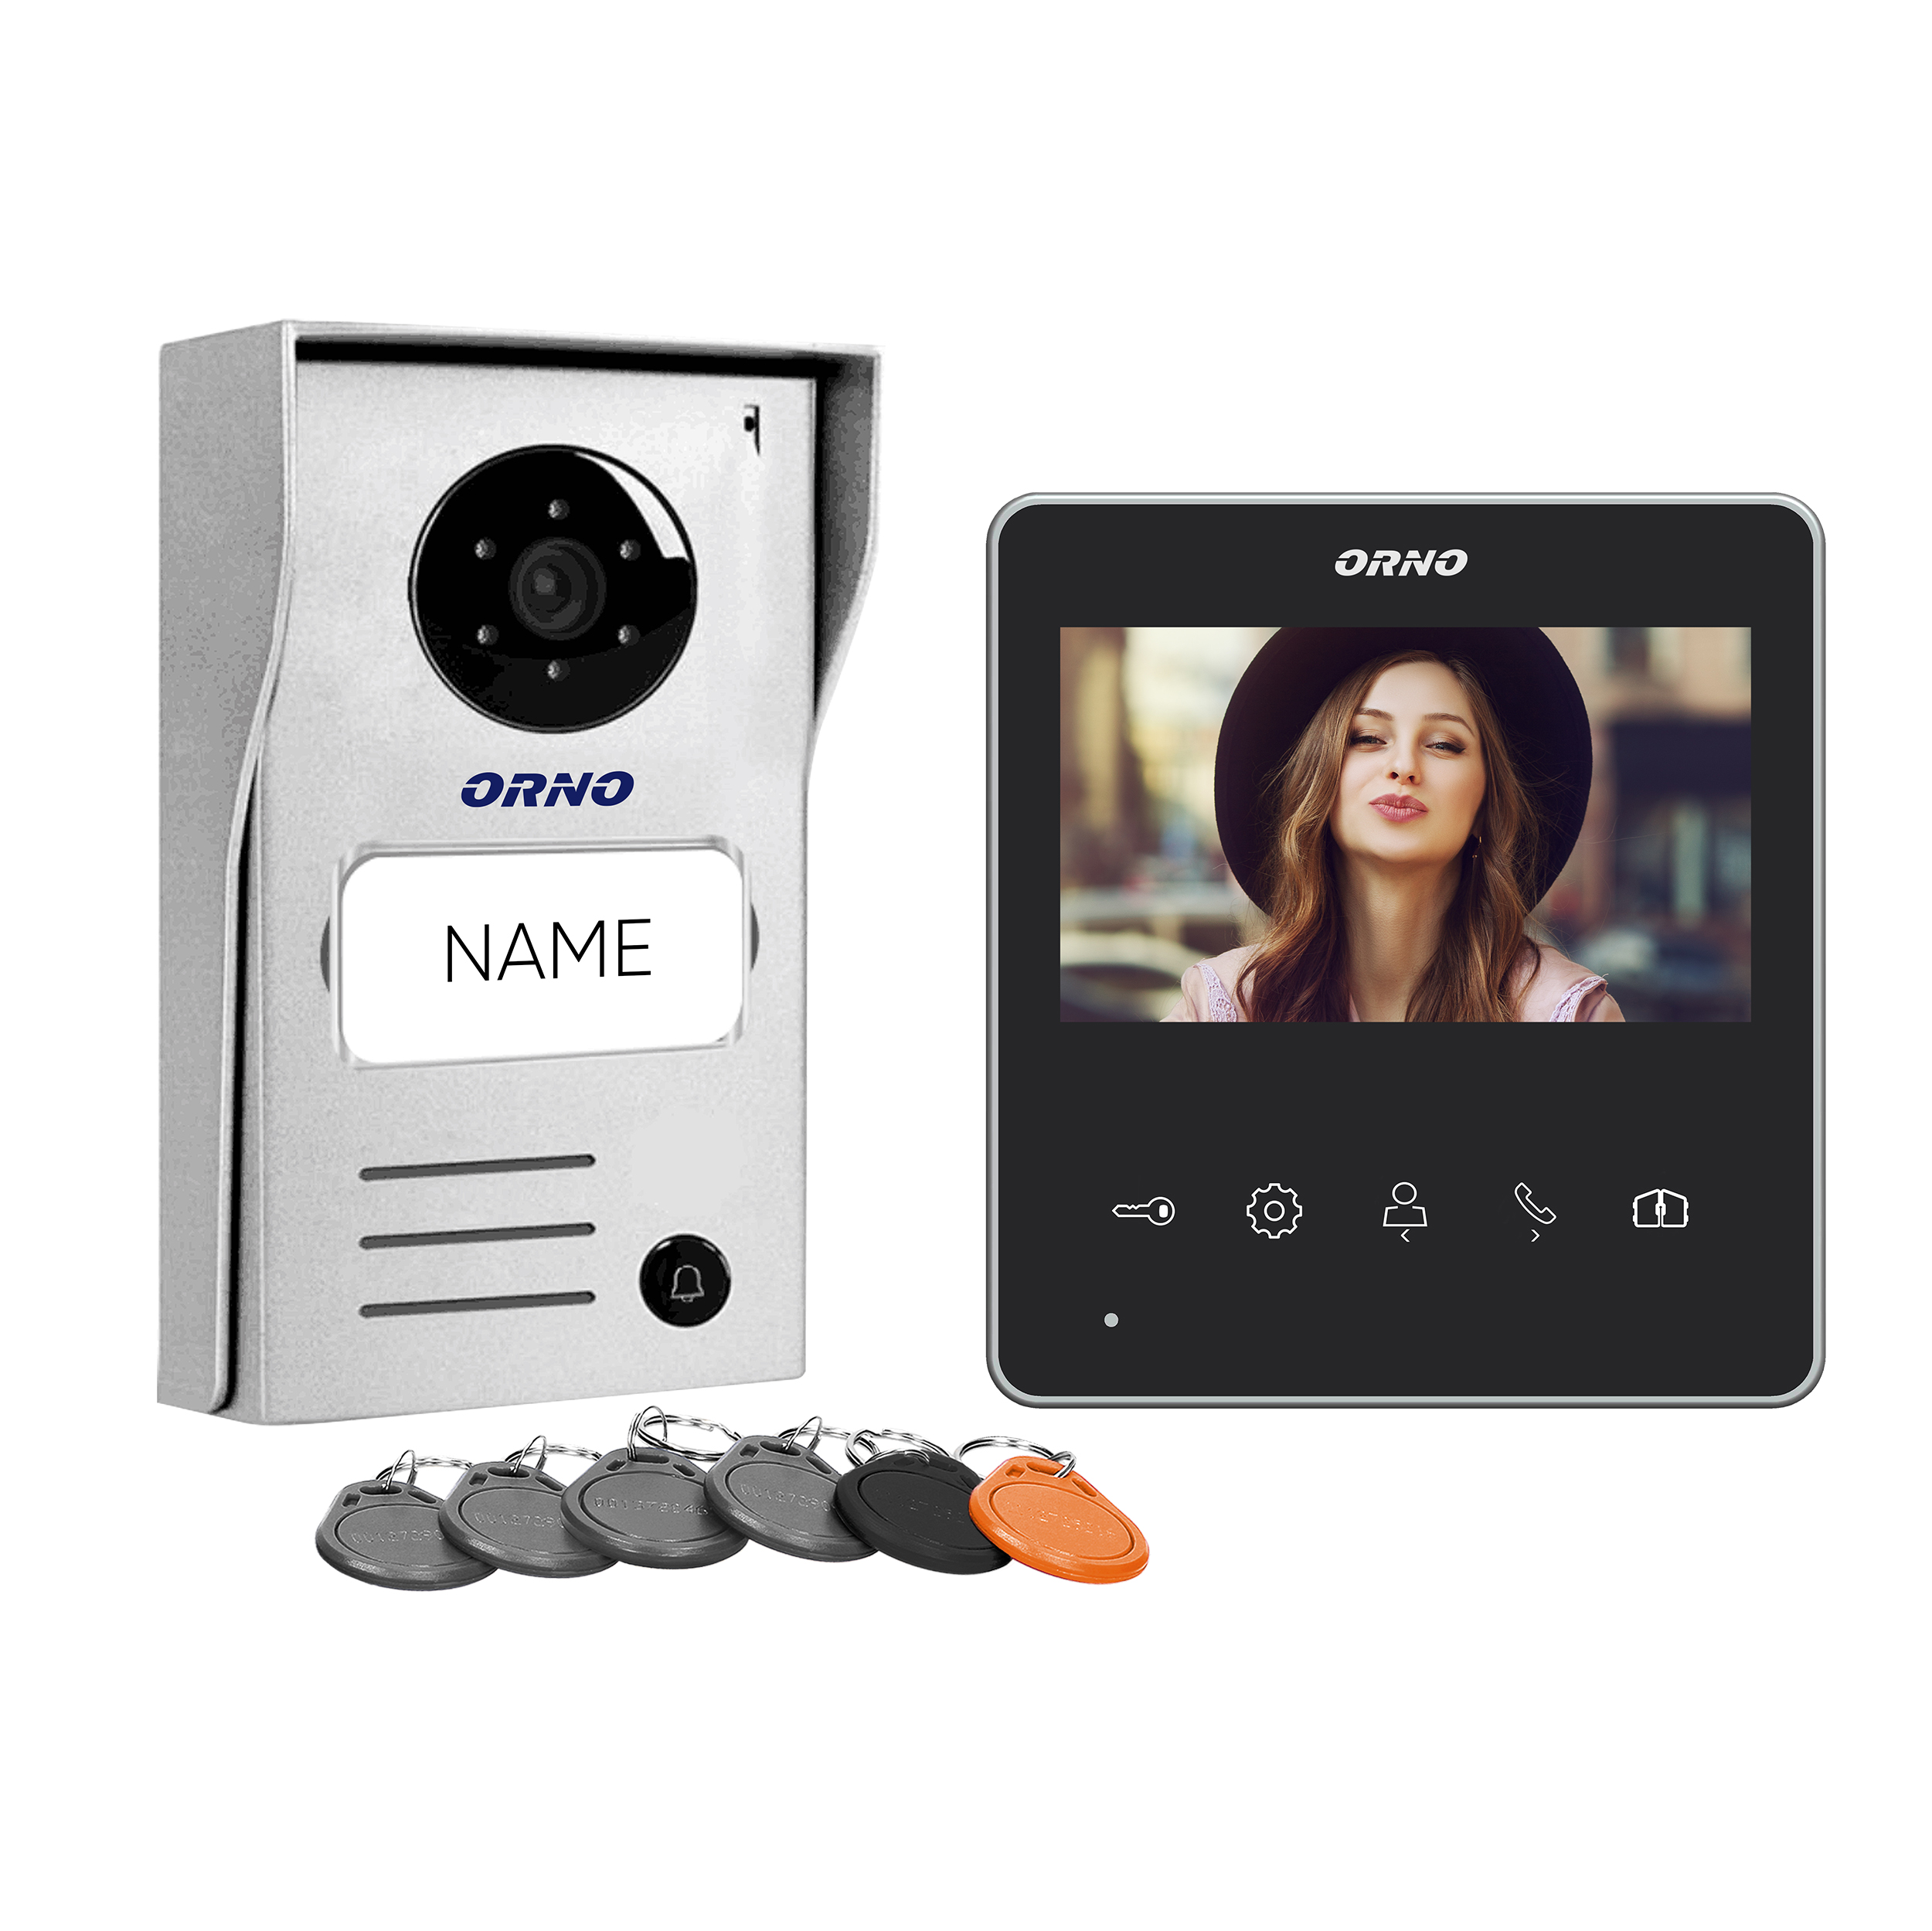 Videointerfon pentru o familie ORNO NAOS RFID OR-VID-SH-1074, color, monitor LCD 4.3", control automat al portilor, 10 sonerii, infrarosu, deschidere cu ajutorul etichetelor de proximitate, gri/negru